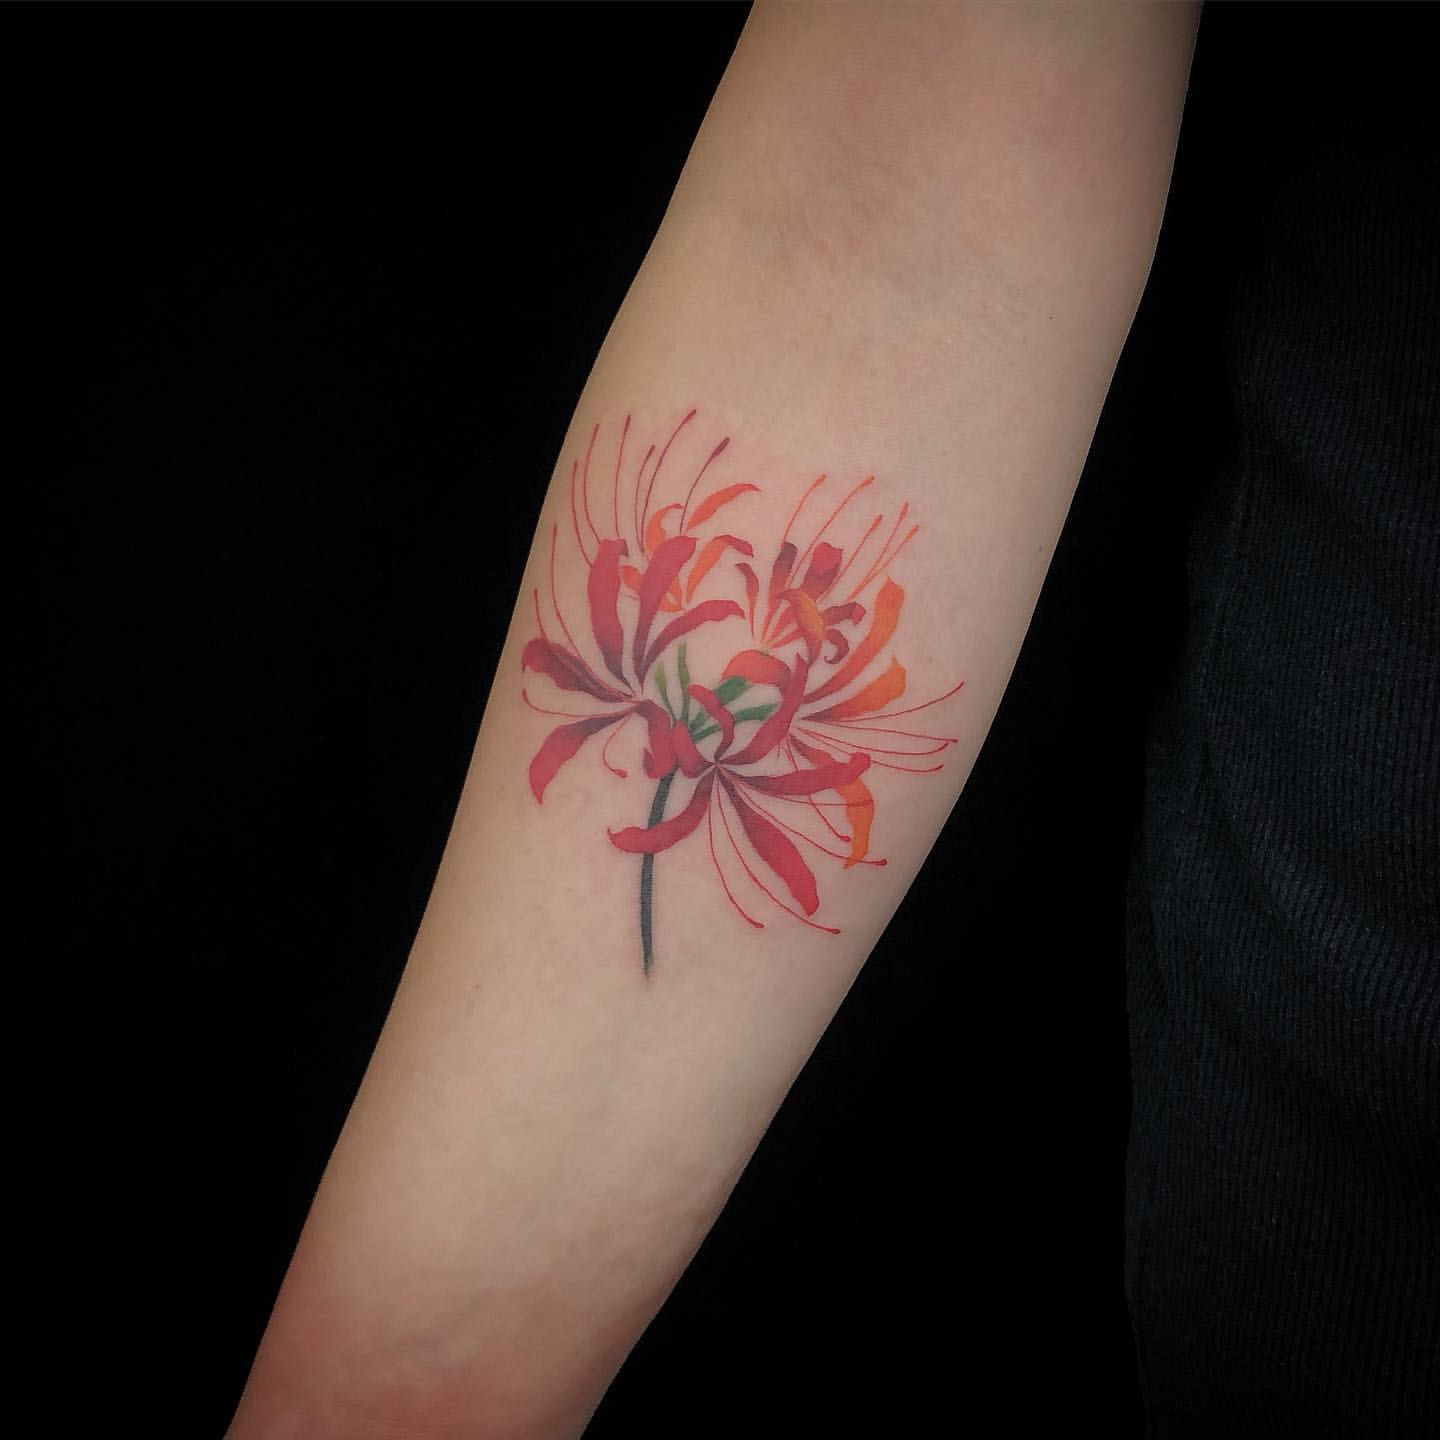 Hὶnh xǎm hoa bỉ ngạn nở rộ trên cánh tay